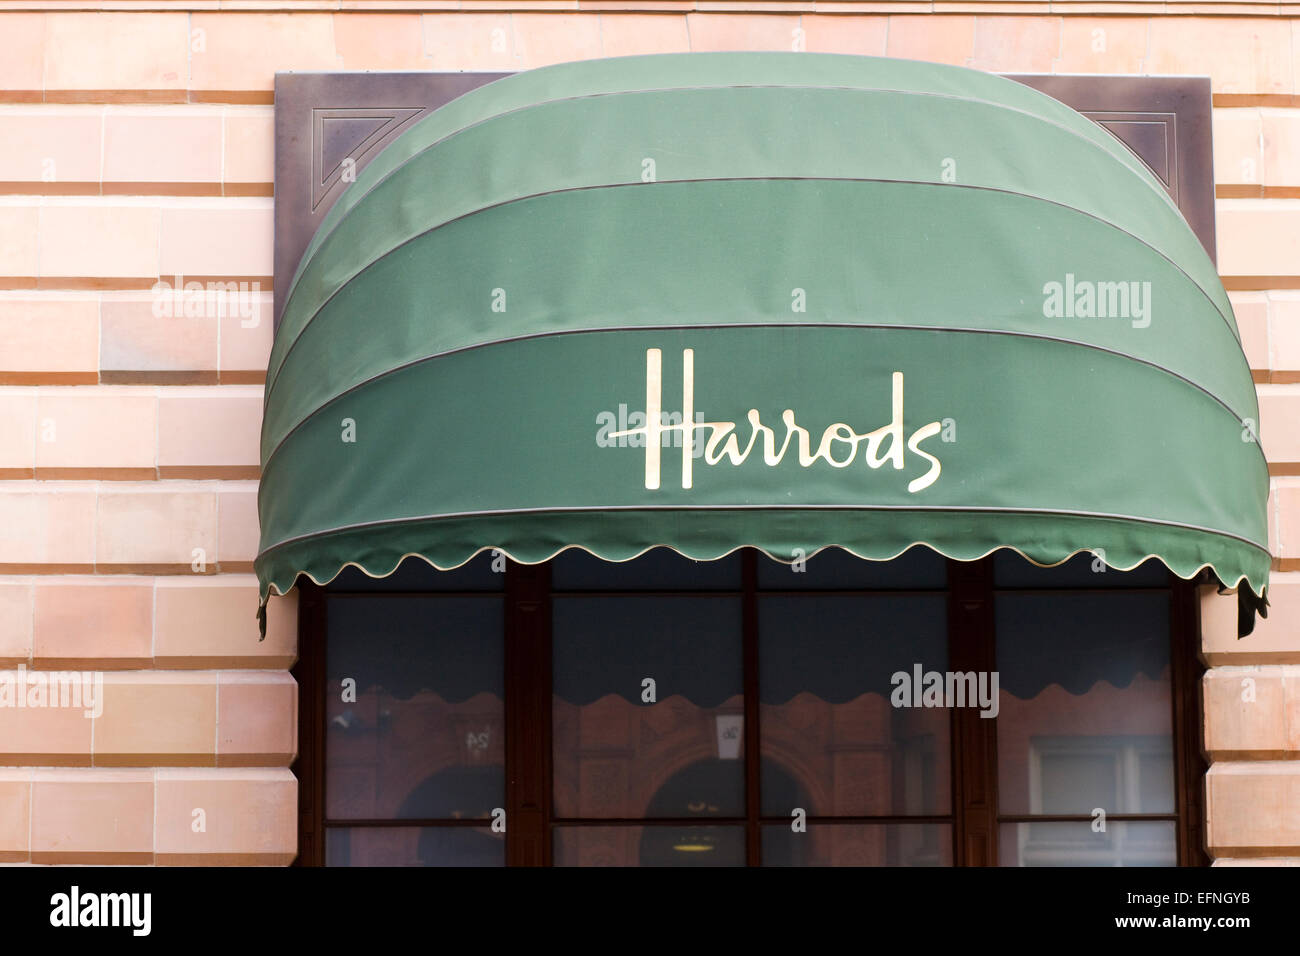 Auvent dans le célèbre magasin Harrods Banque D'Images